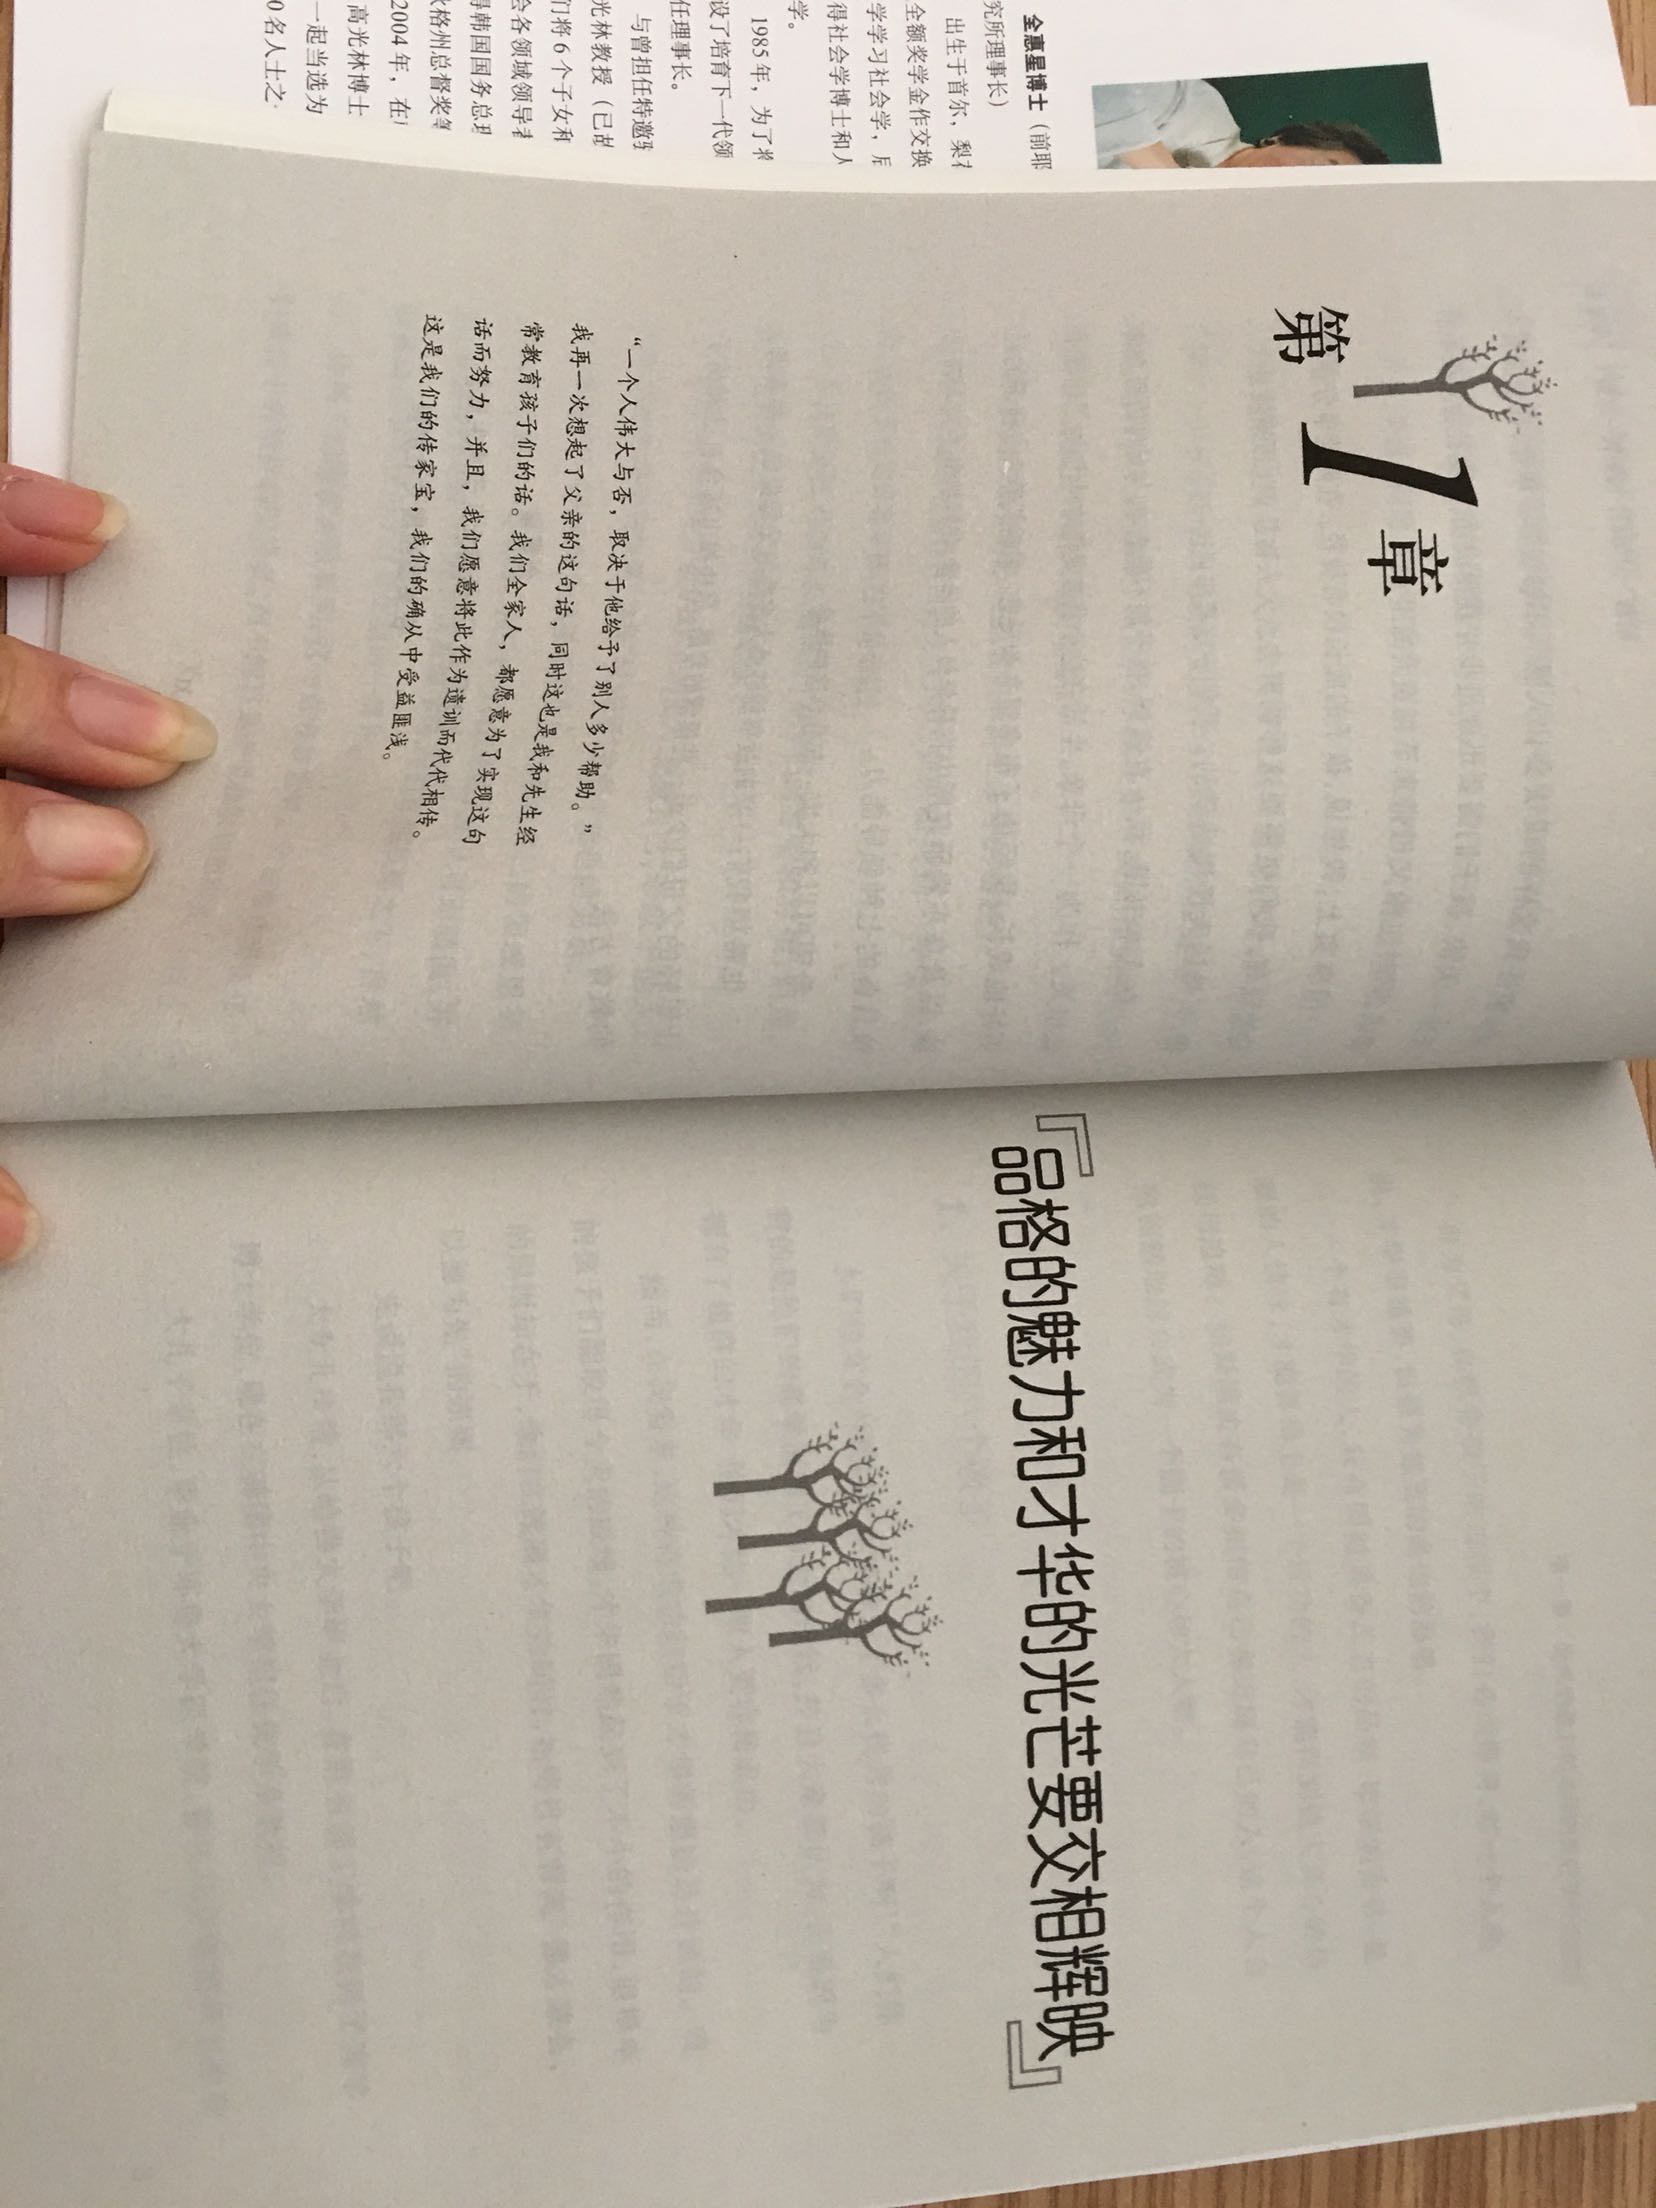 首先就是北这个标志震撼了，蒋佩蓉老师大力推荐过这本书。内容是满满的正能量